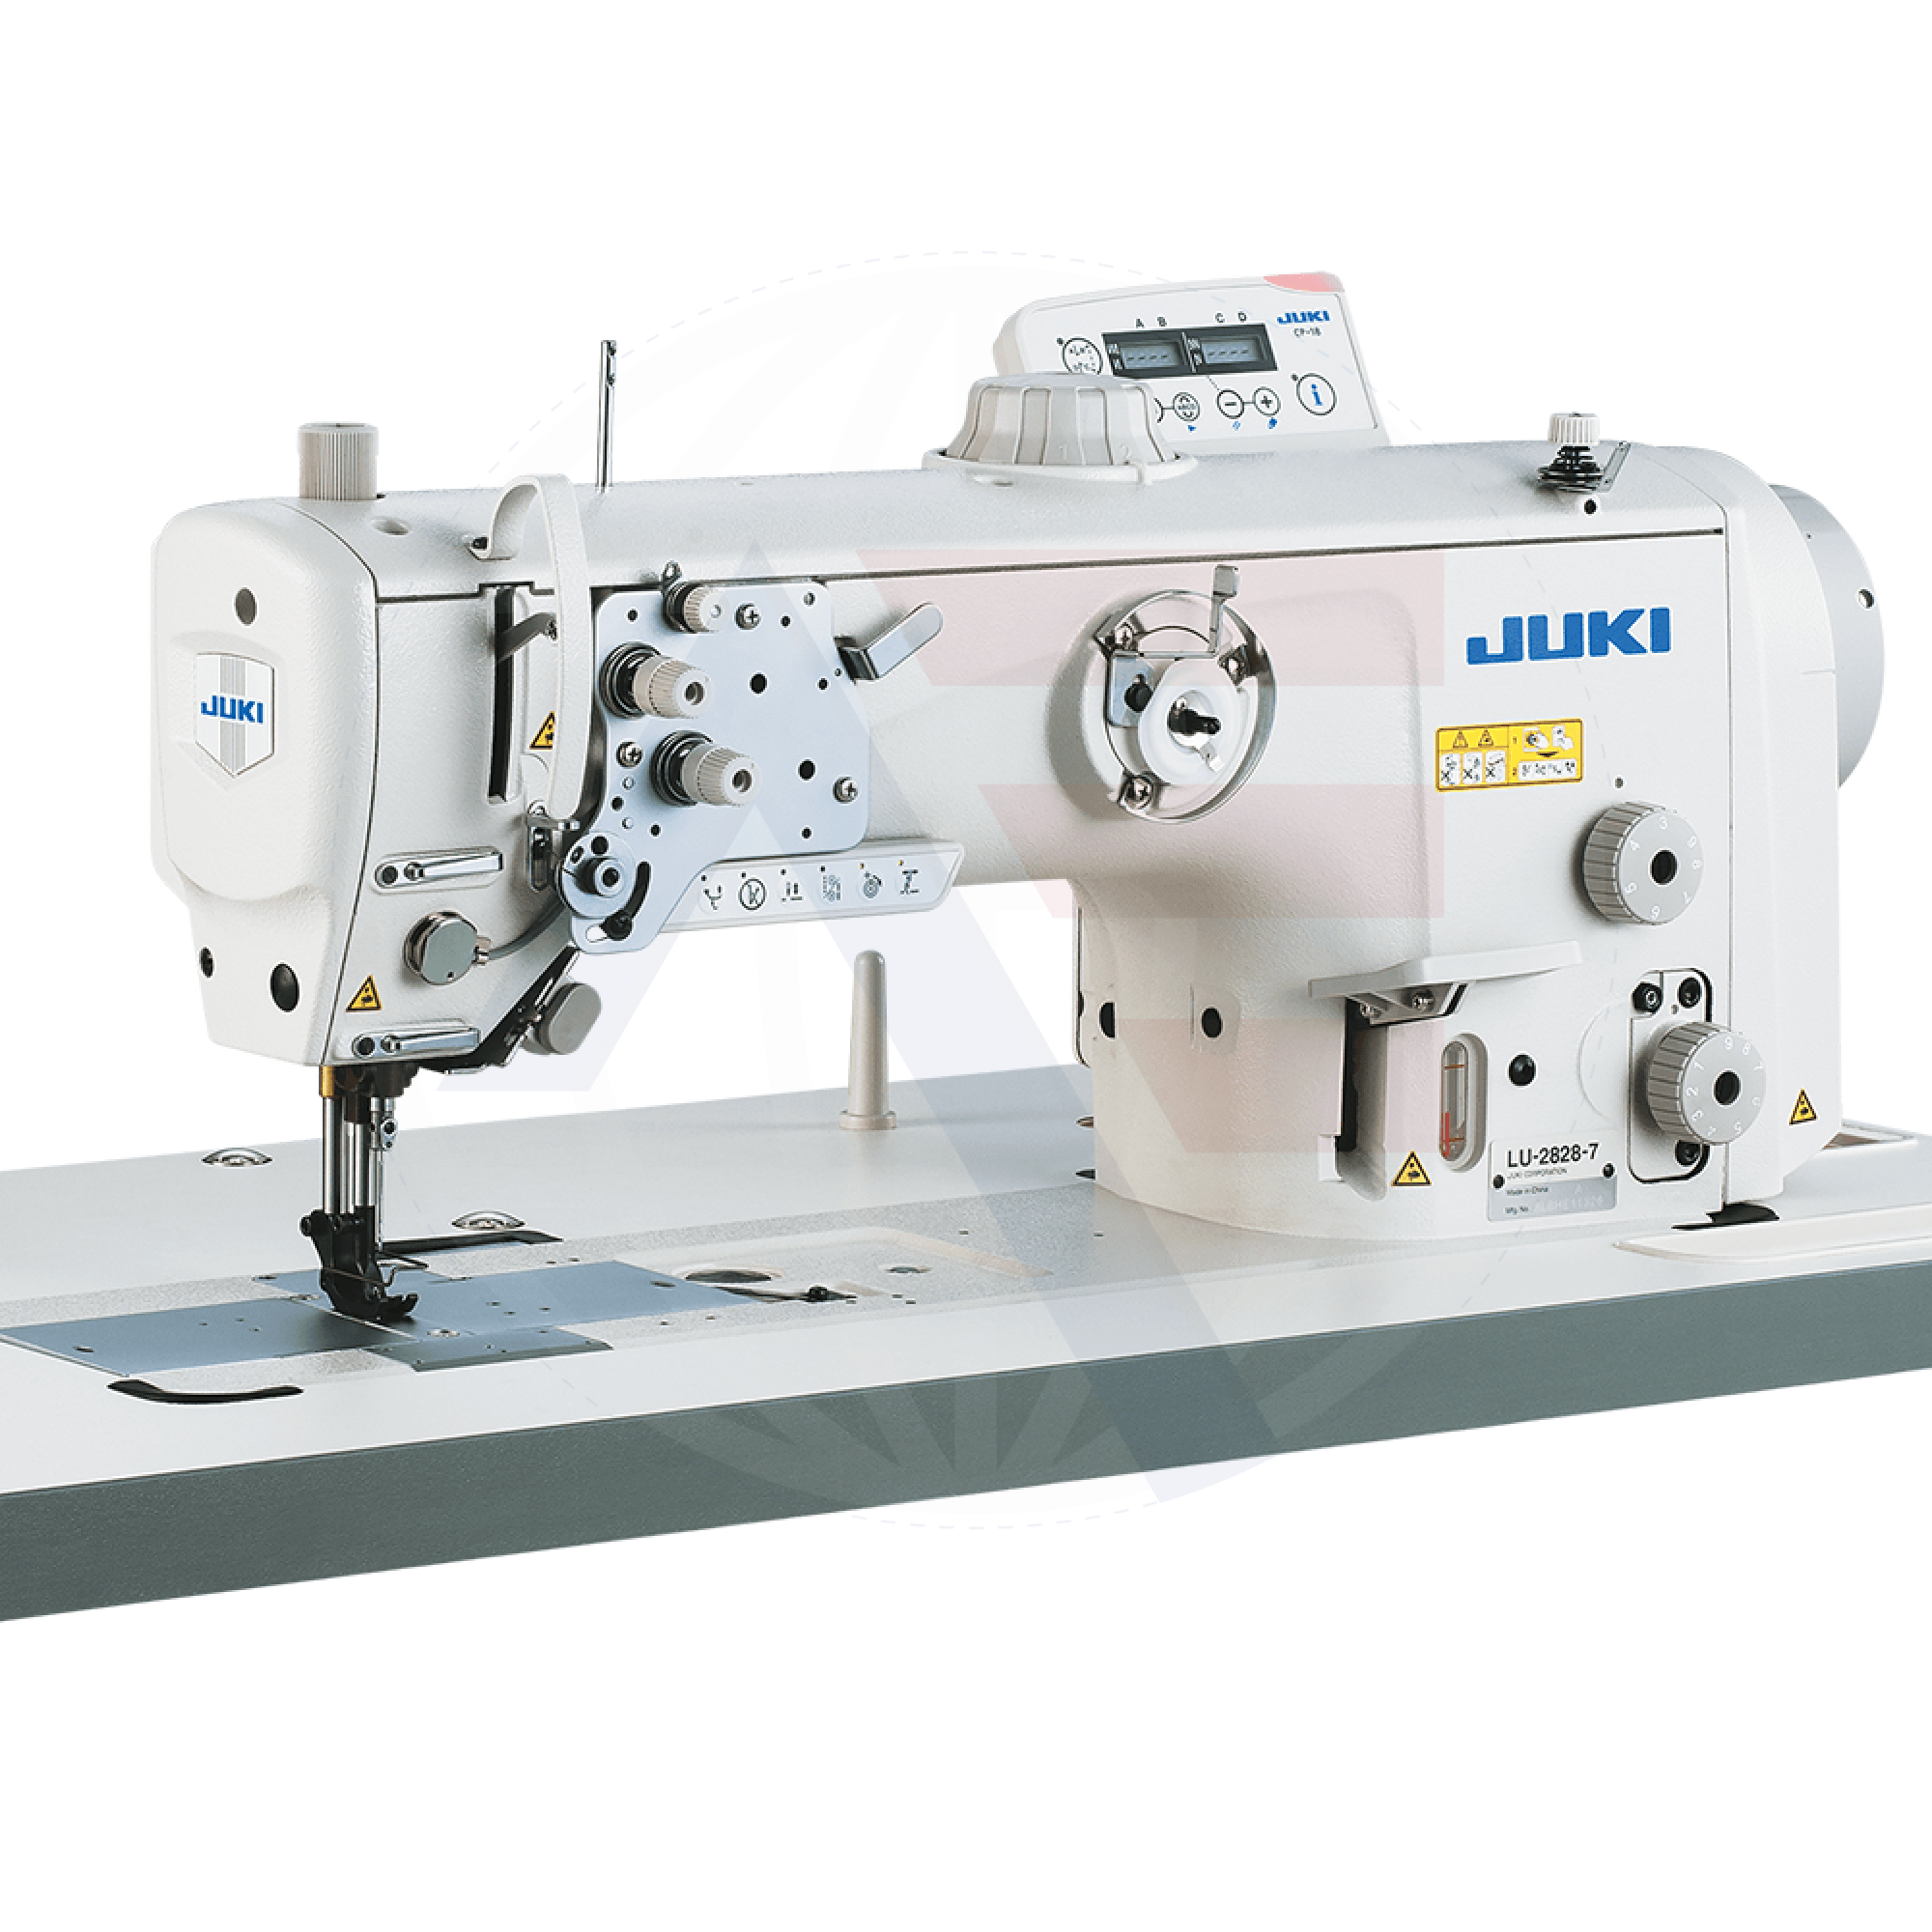 Juki Lu-2818Esal-7 1-Needle Walking-Foot Machine Sewing Machines